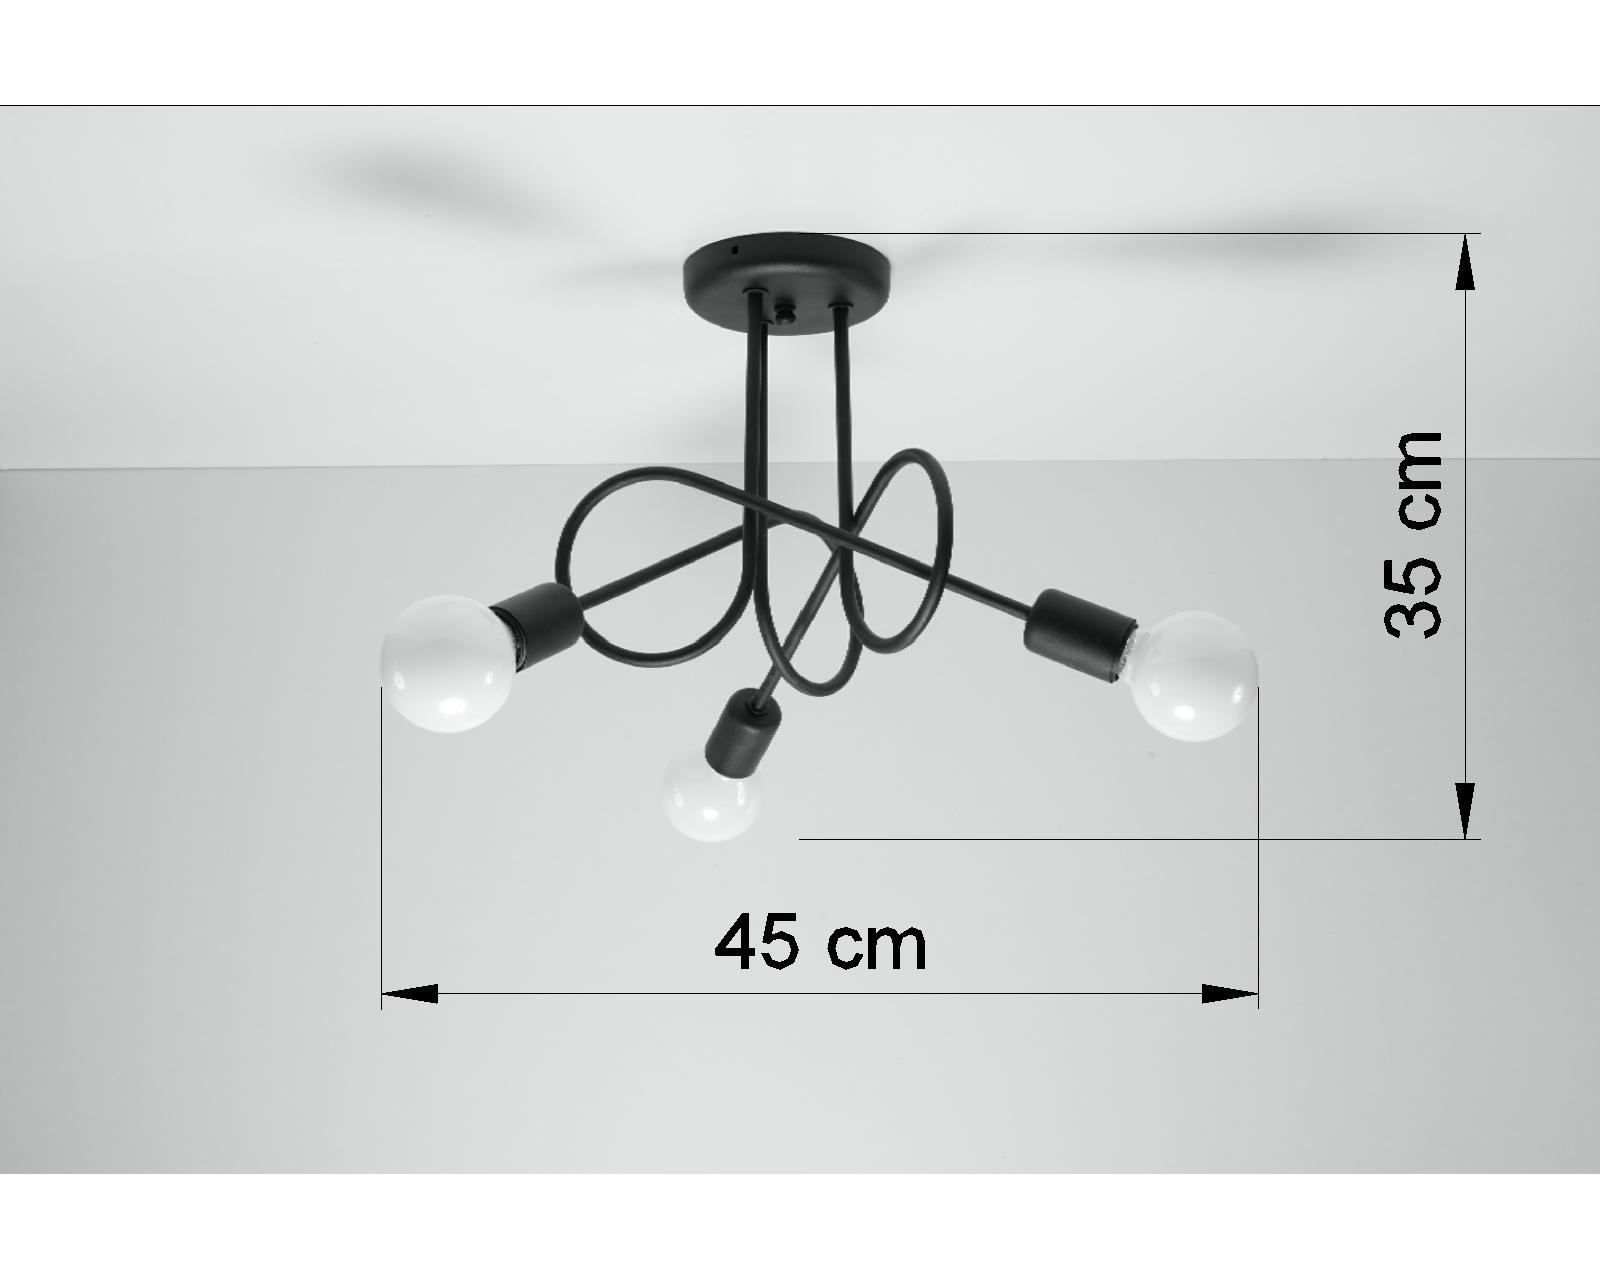 Едісон 3 Підвісний світильник чорний дитячий стельовий бренд Sollux освітлення